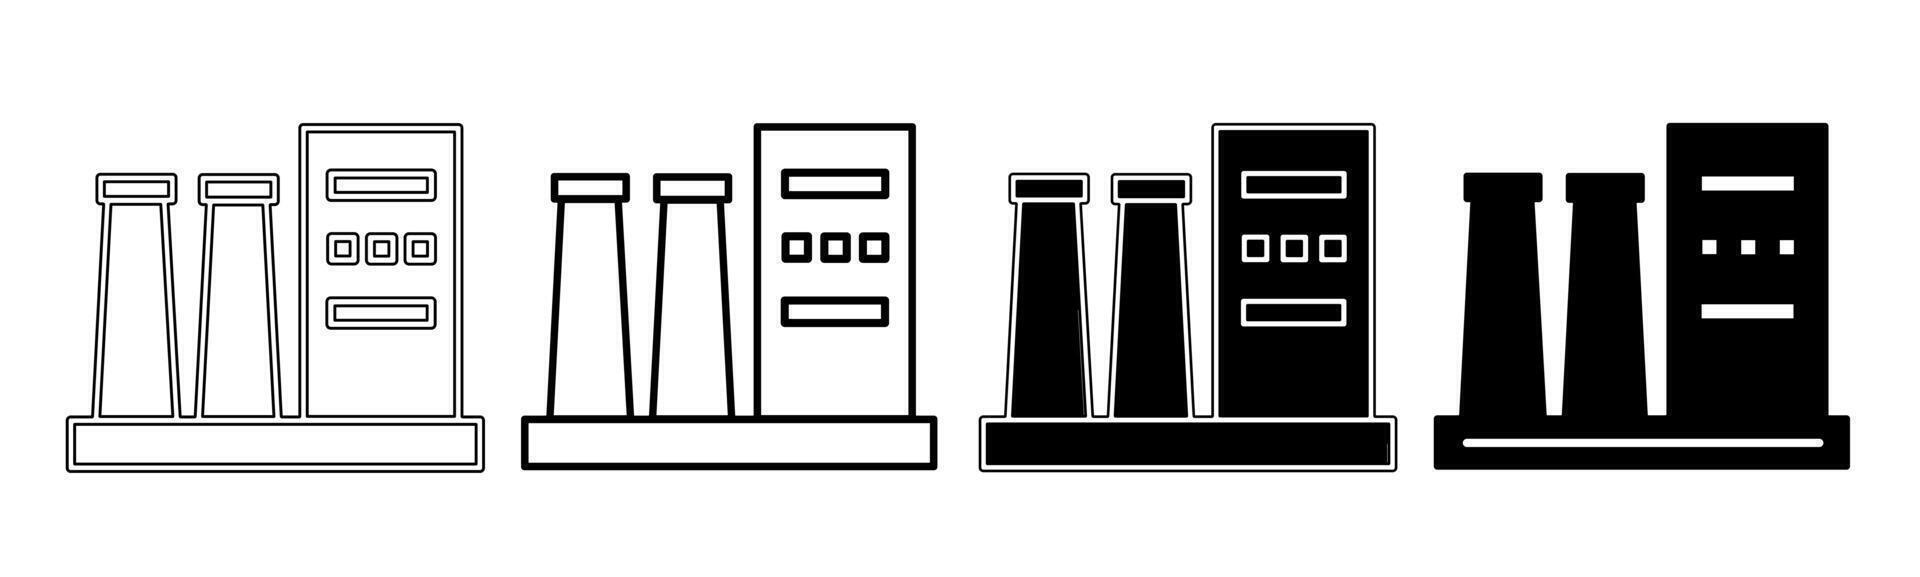 noir et blanc illustration de une usine. usine icône collection avec doubler. Stock vecteur illustration.